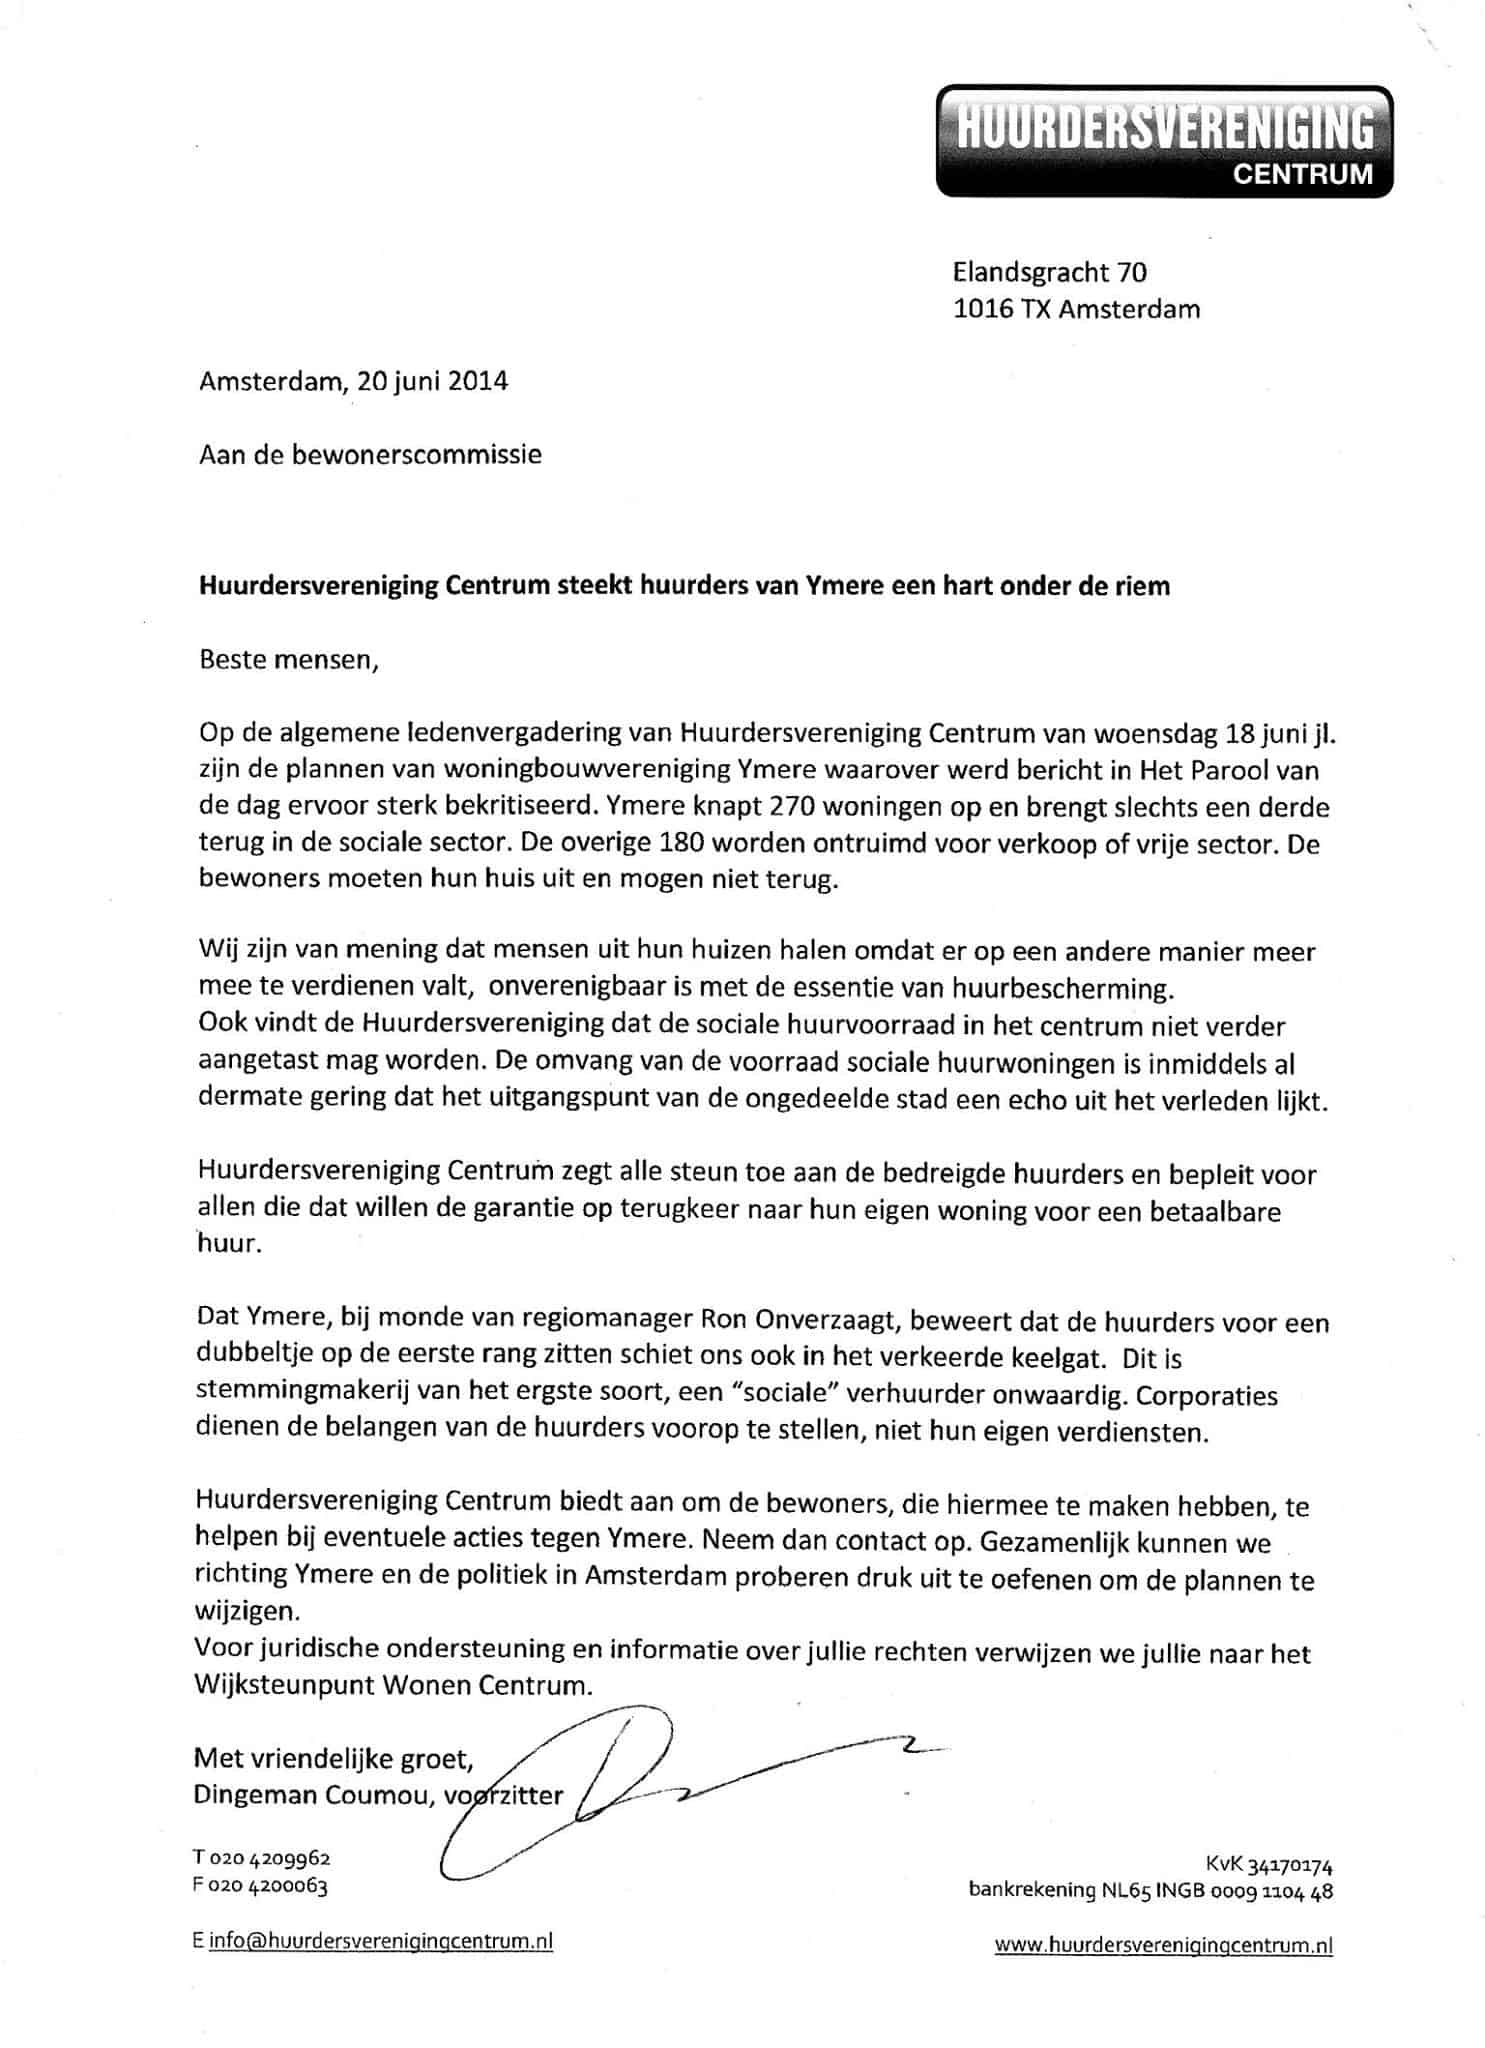 Brief HvC over Ymere plannen